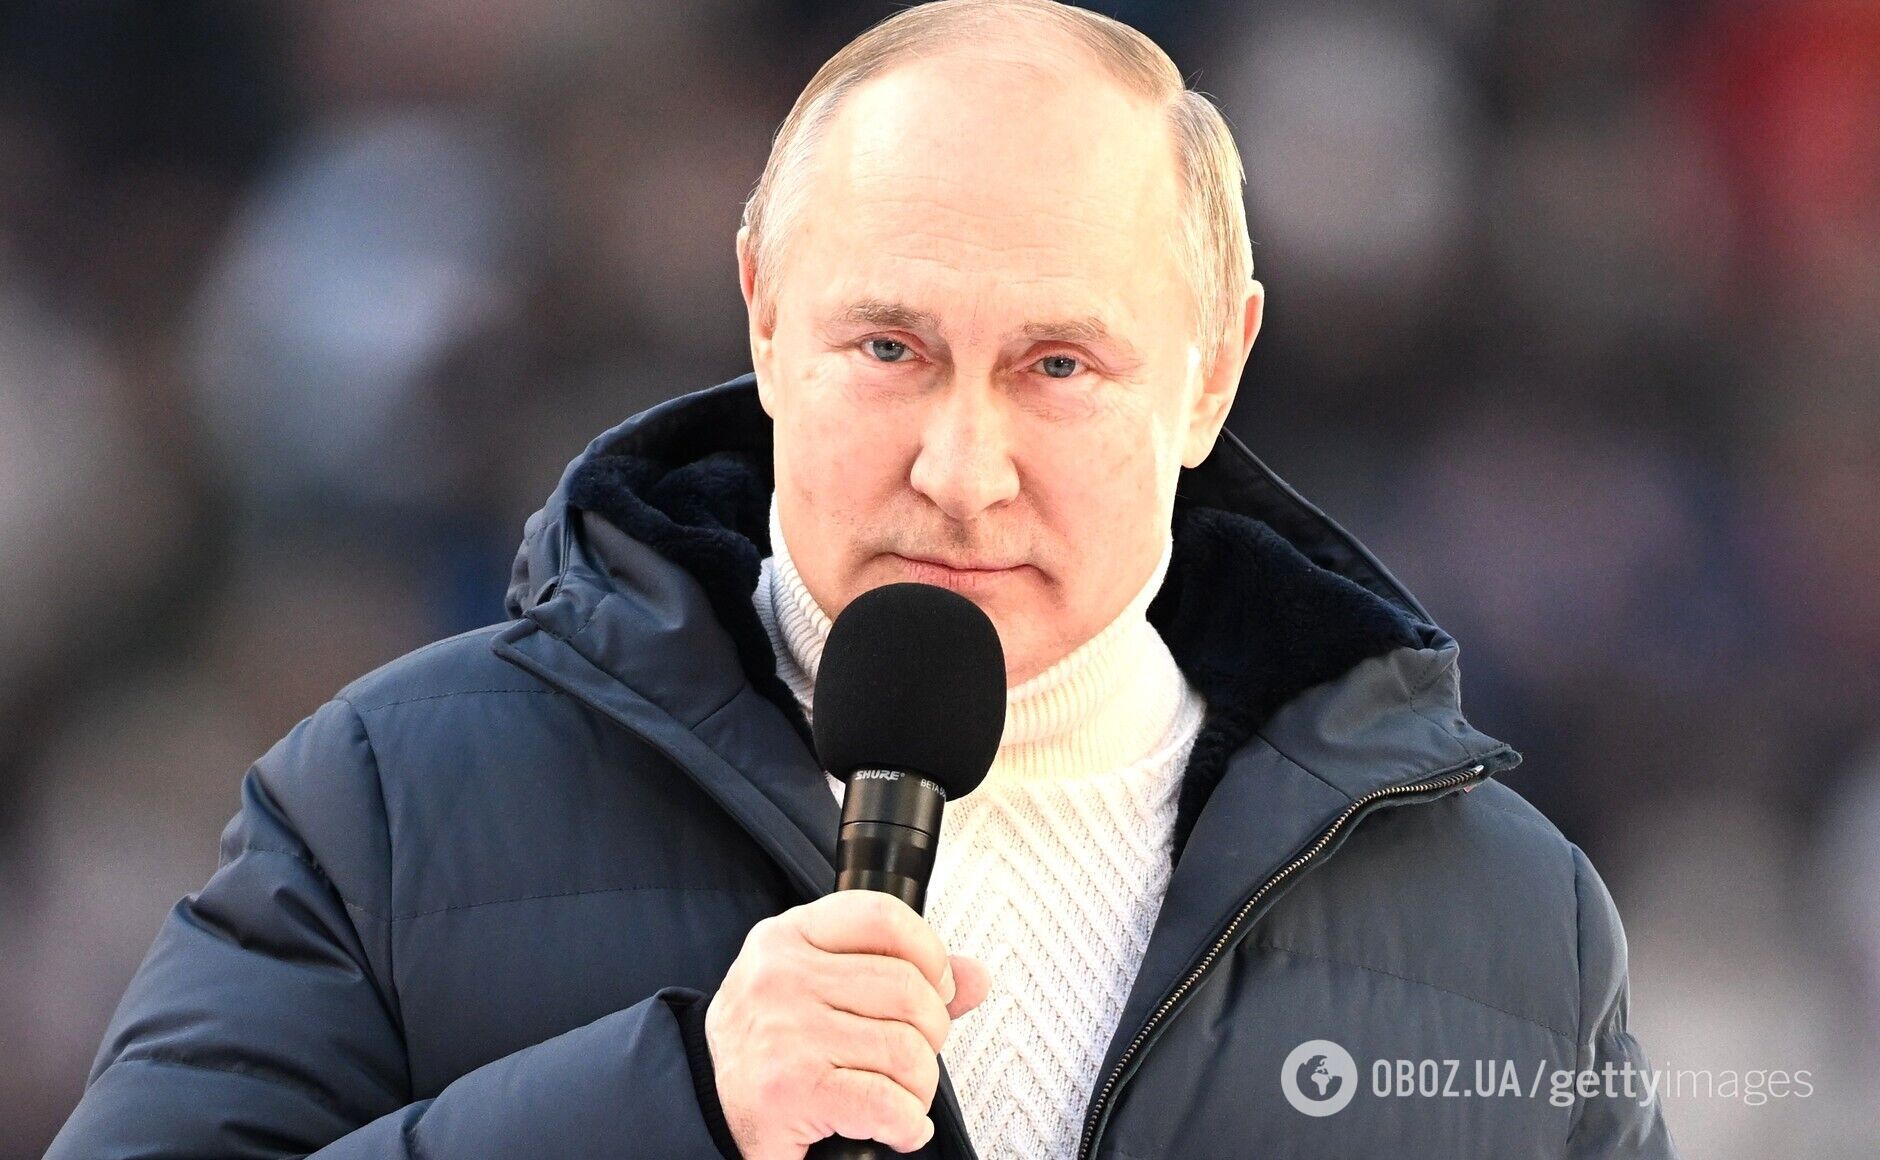 Во время выступления Путина произошел конфуз